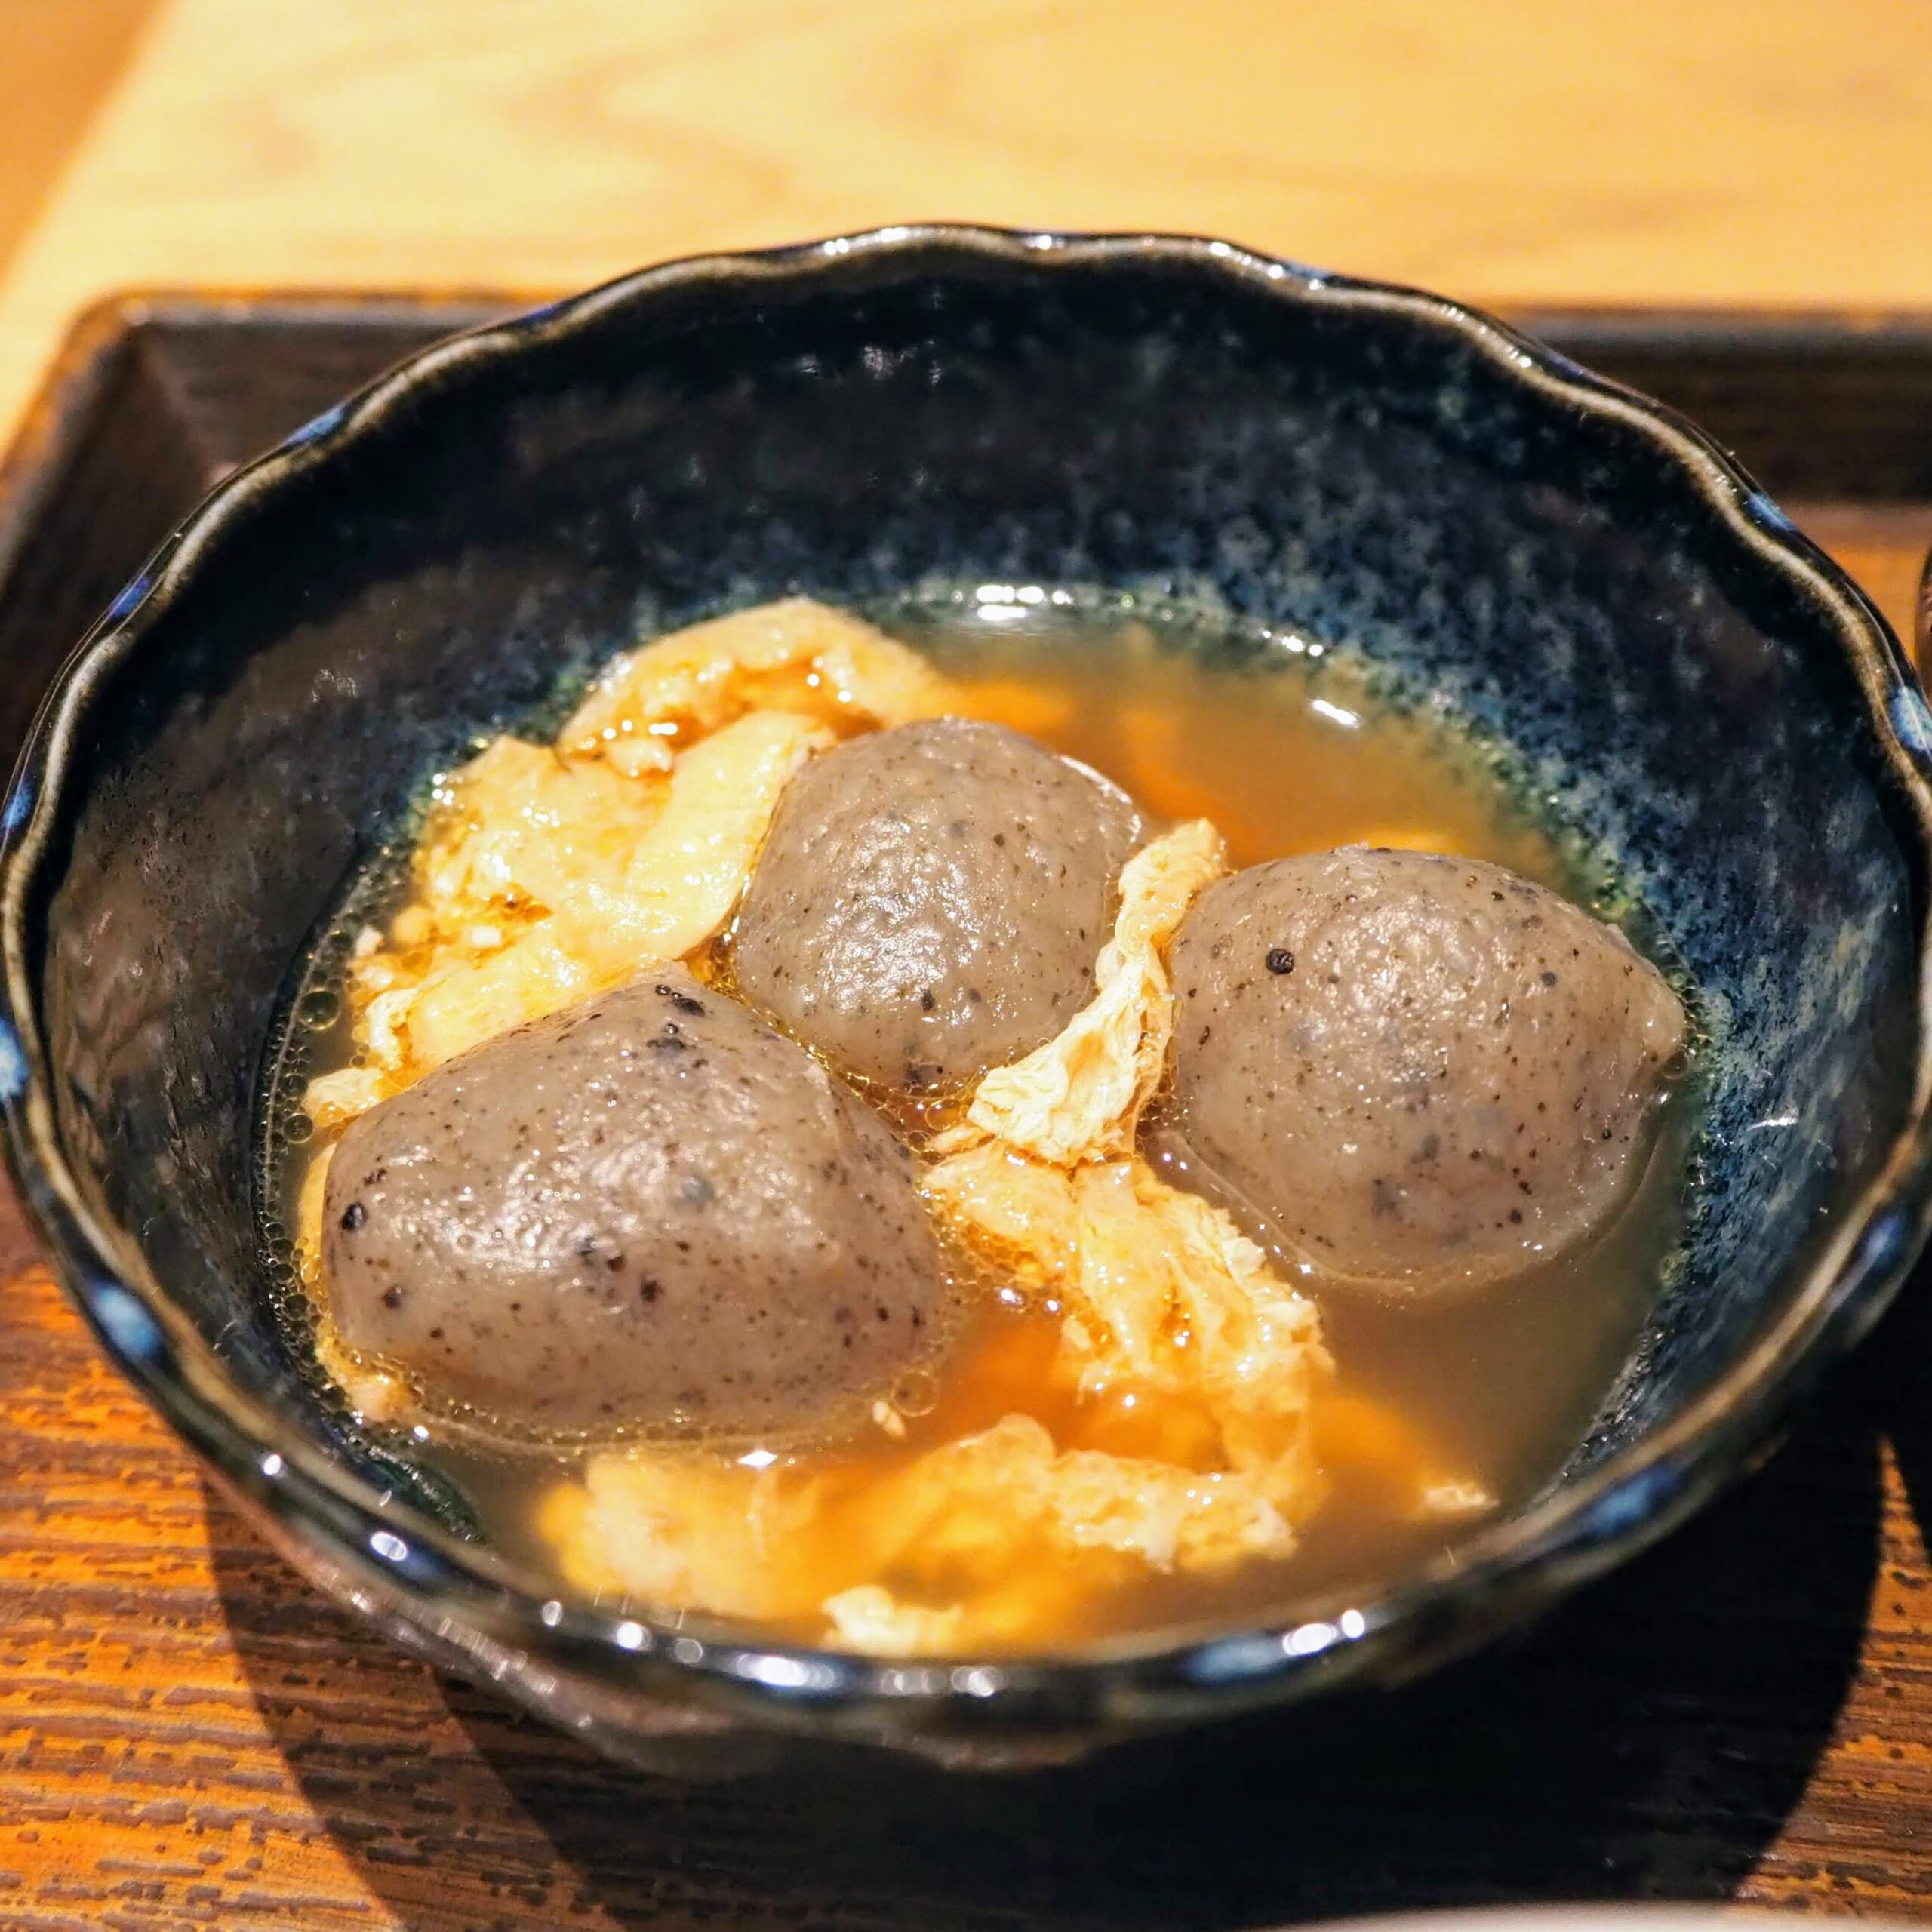 土鍋炊ごはん なかよし 渋谷ストリーム店 さばの味噌煮定食 こんにゃくと油揚げの煮物